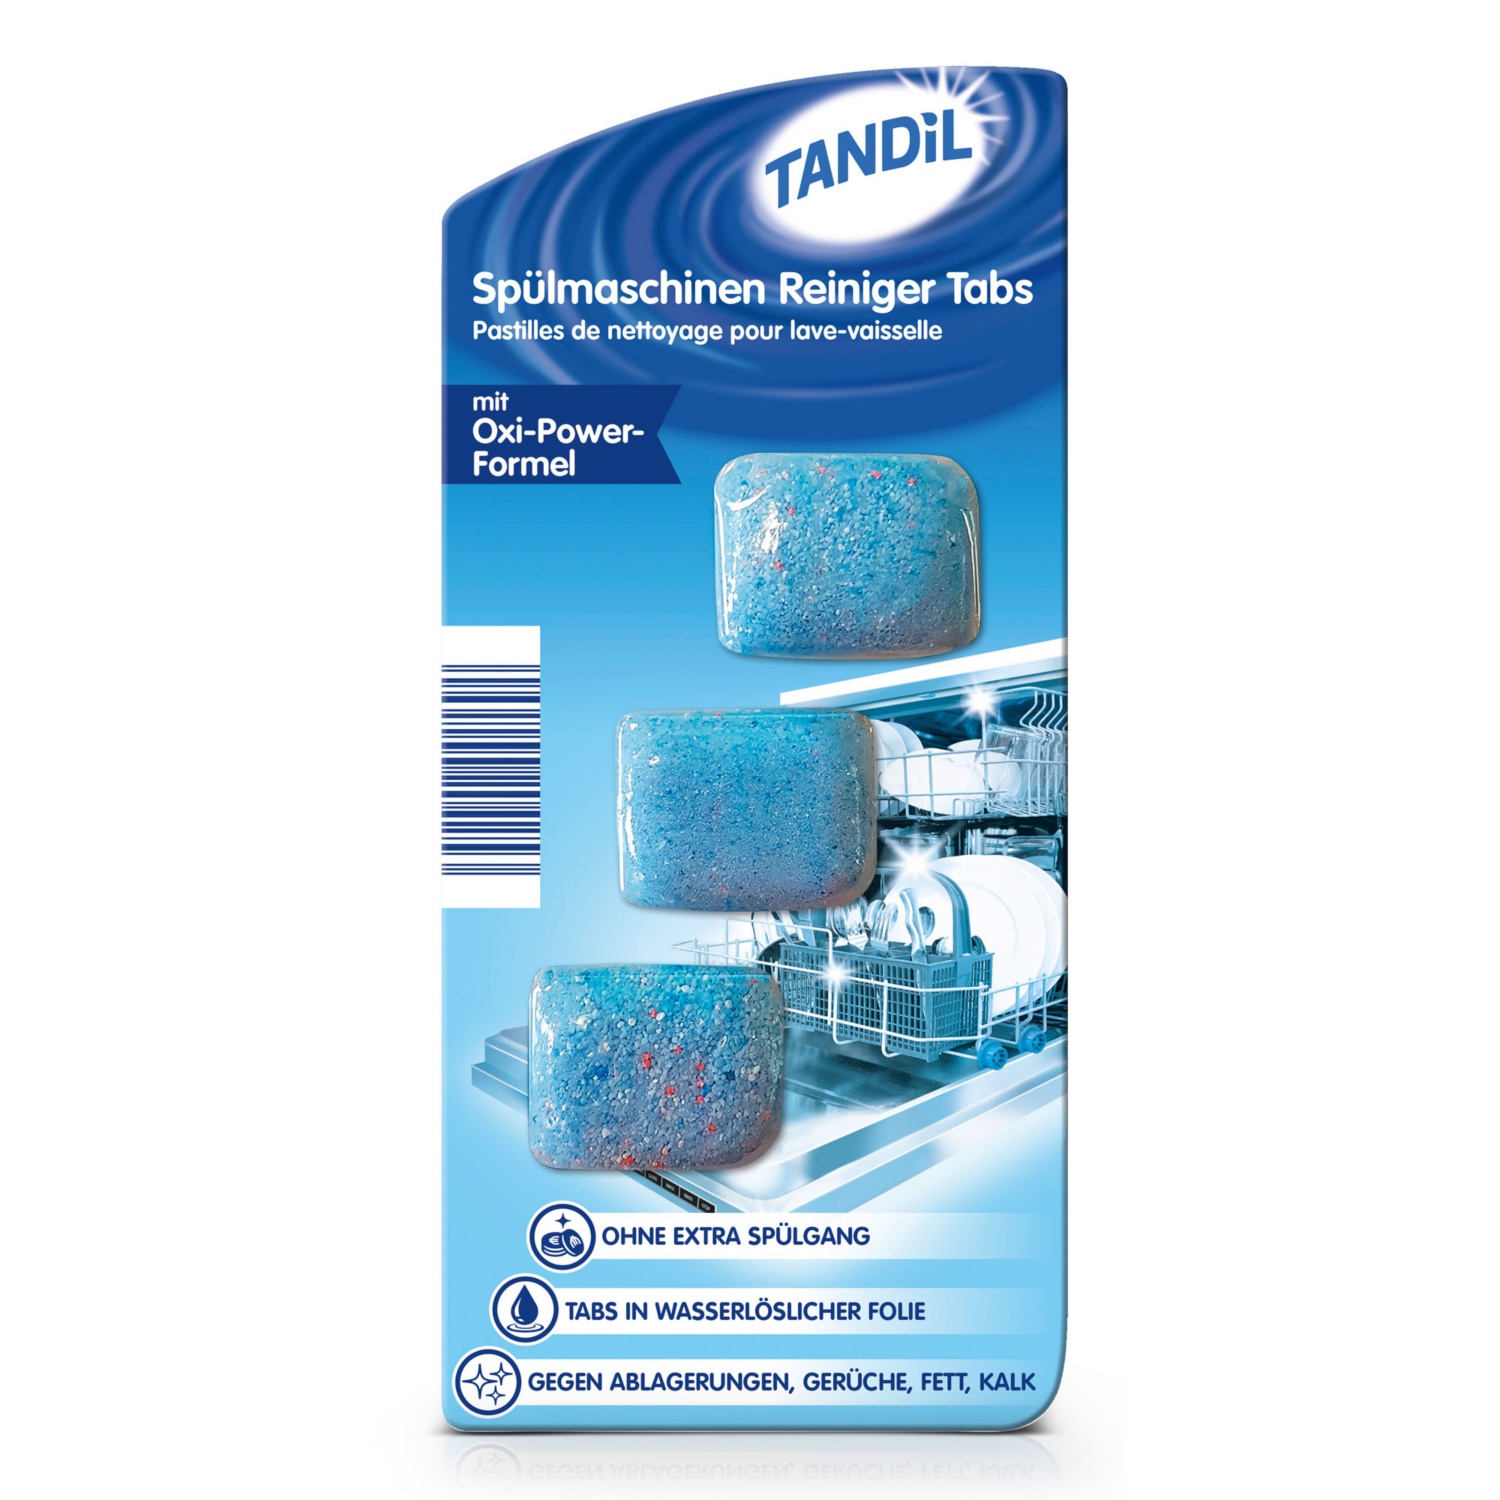 TANDIL Spülmaschinen Reiniger Tabs/Deo